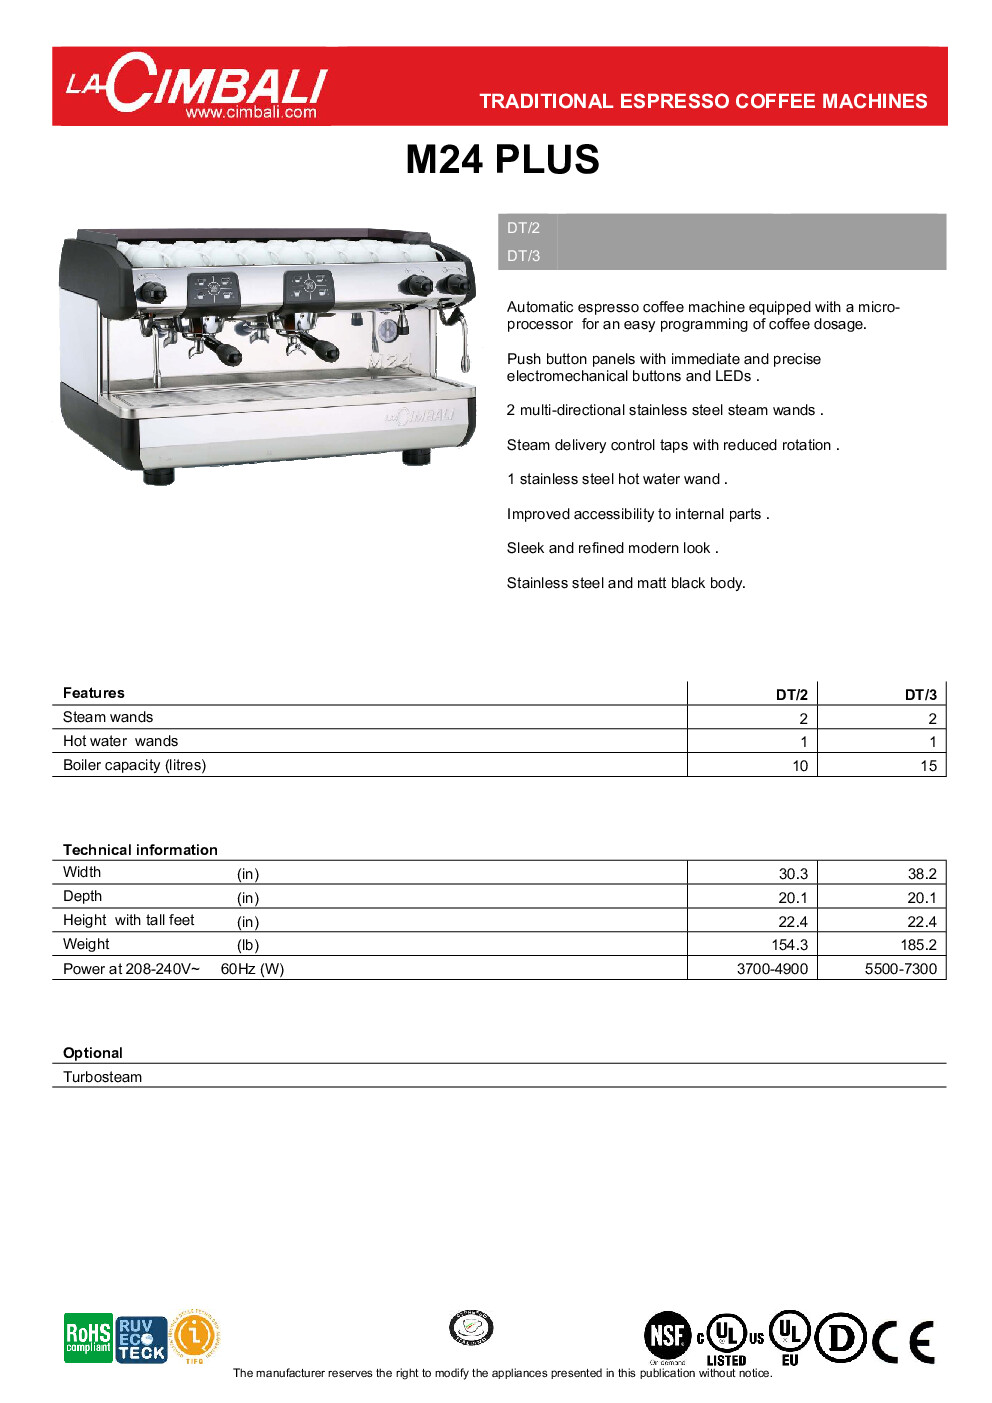 Cimbali M24 PLUS DT/3 Espresso Cappuccino Machine